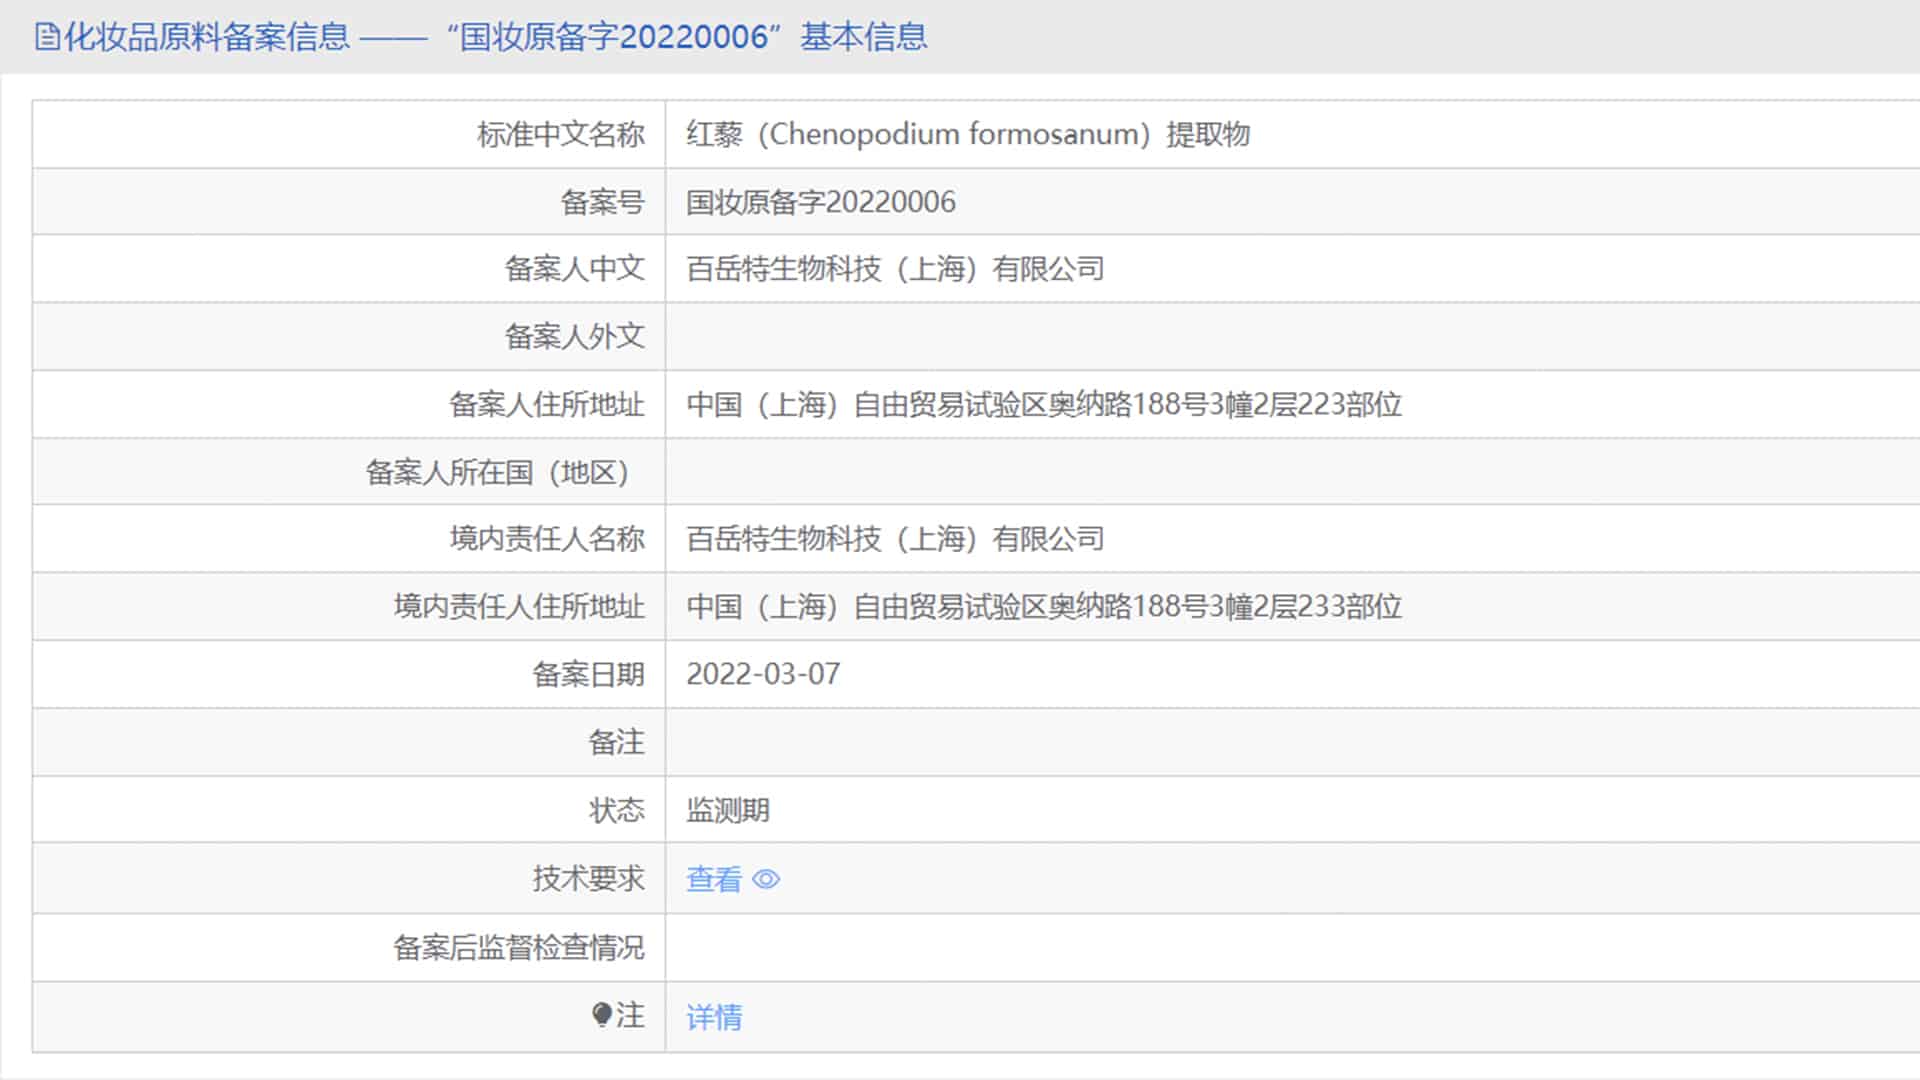 TCI申報的化妝品新原料——台灣藜提取物已備案並公佈。